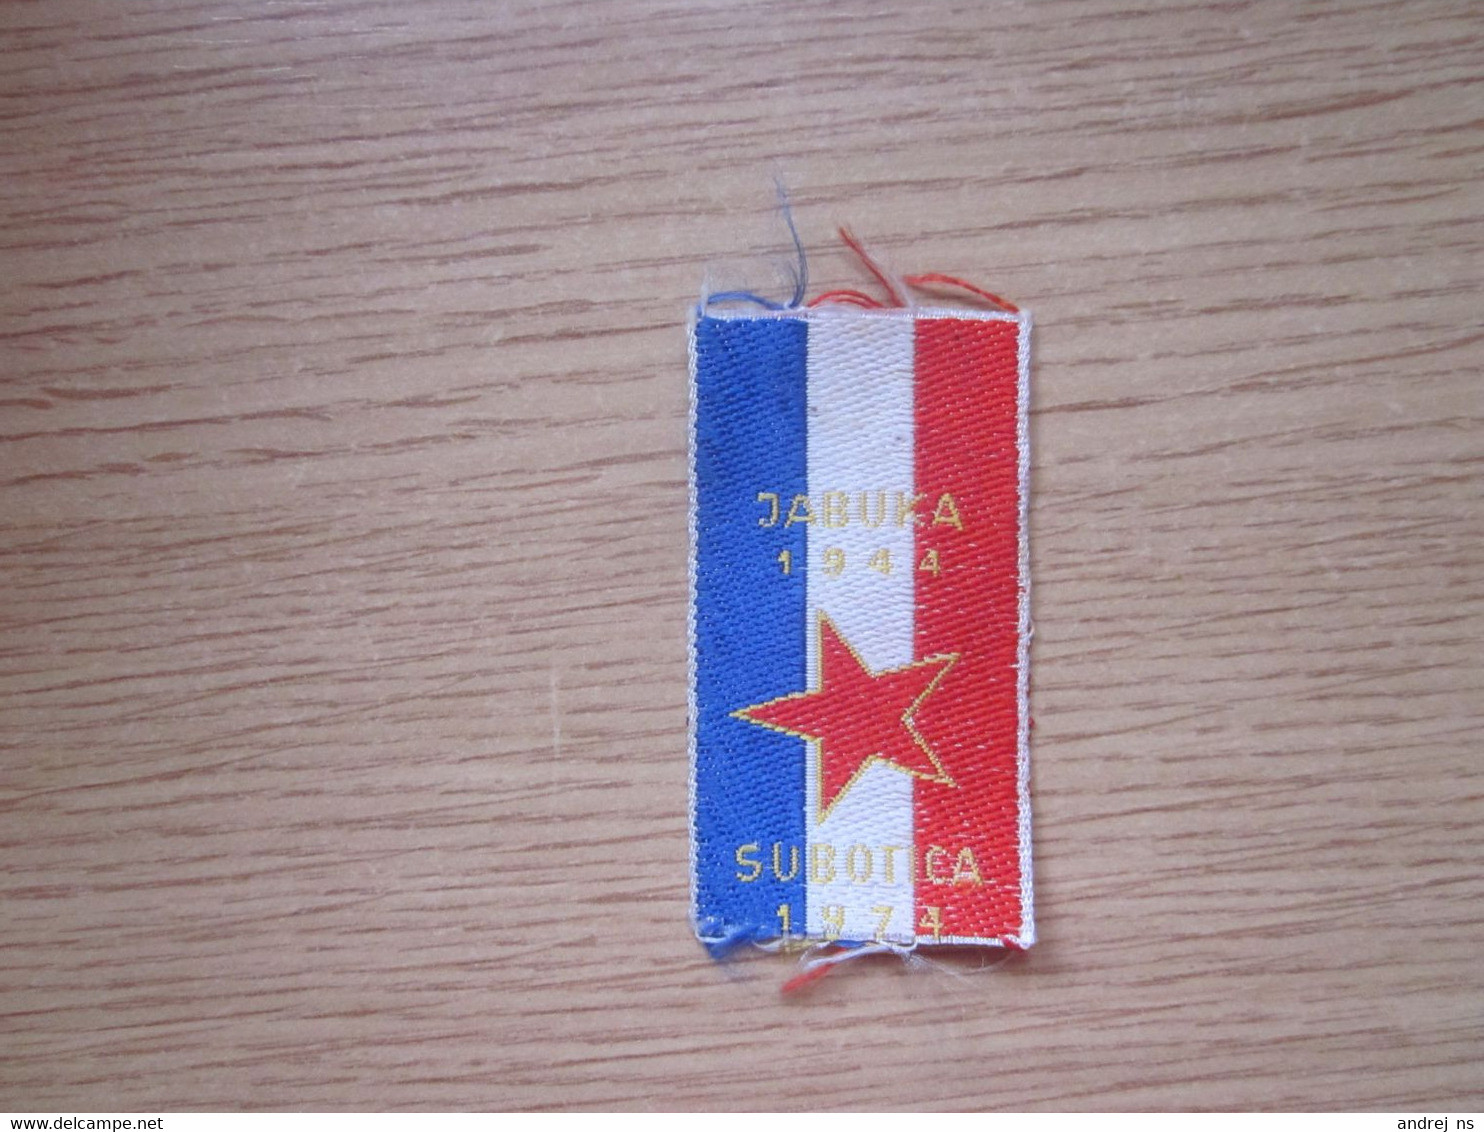 Small Flag Of Yugoslavia Jabuka 1944 Subotica 1974 3.2x5.5 Cm - Bandiere